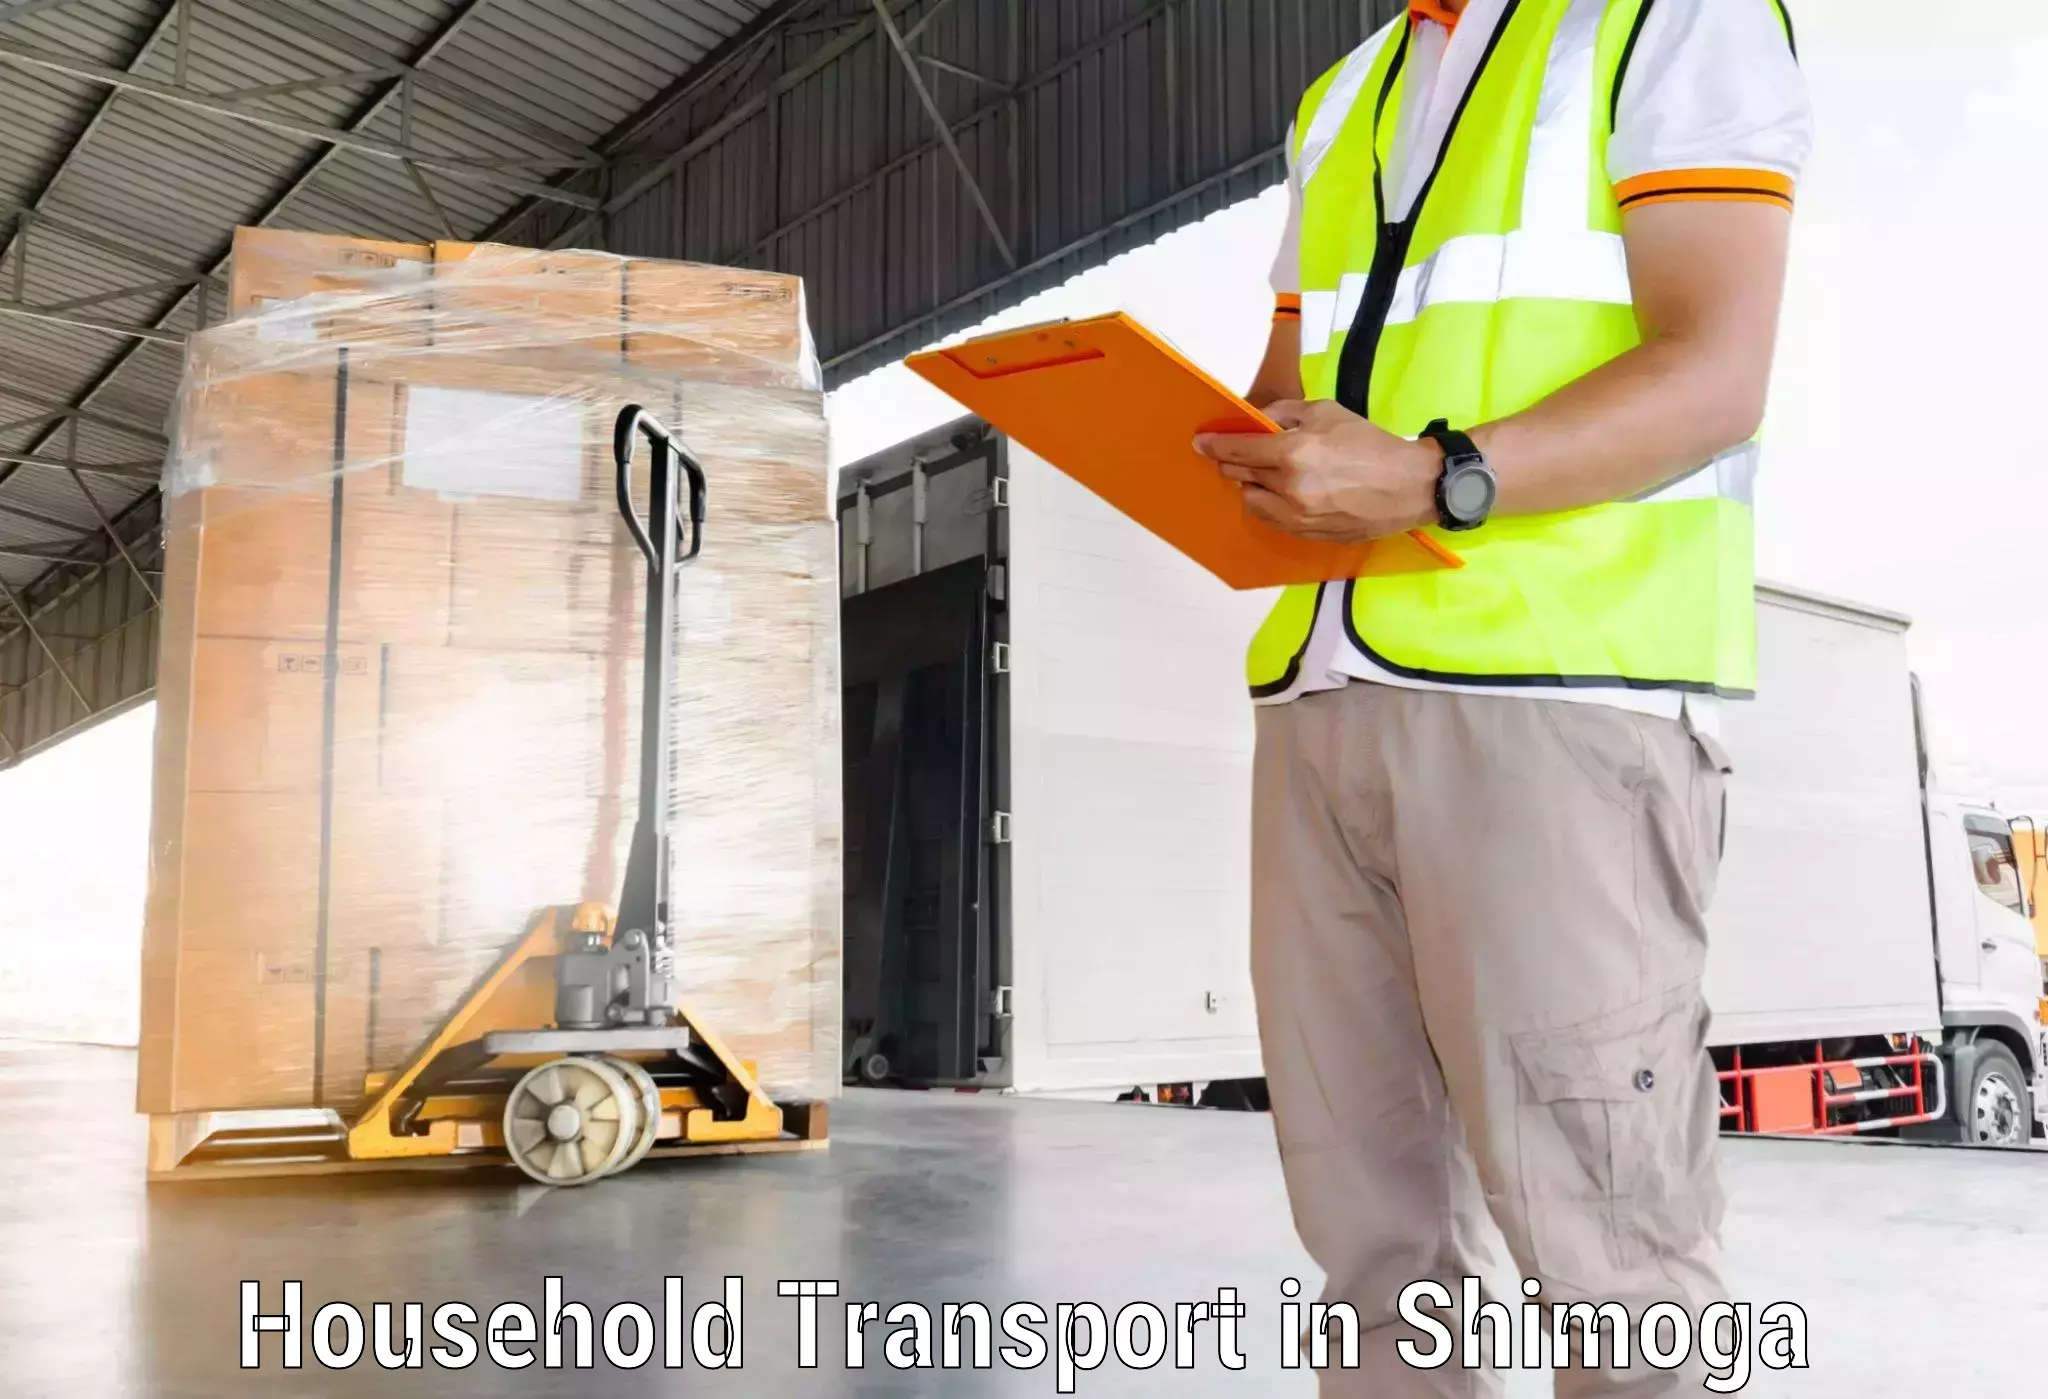 Household goods transport service in Shimoga